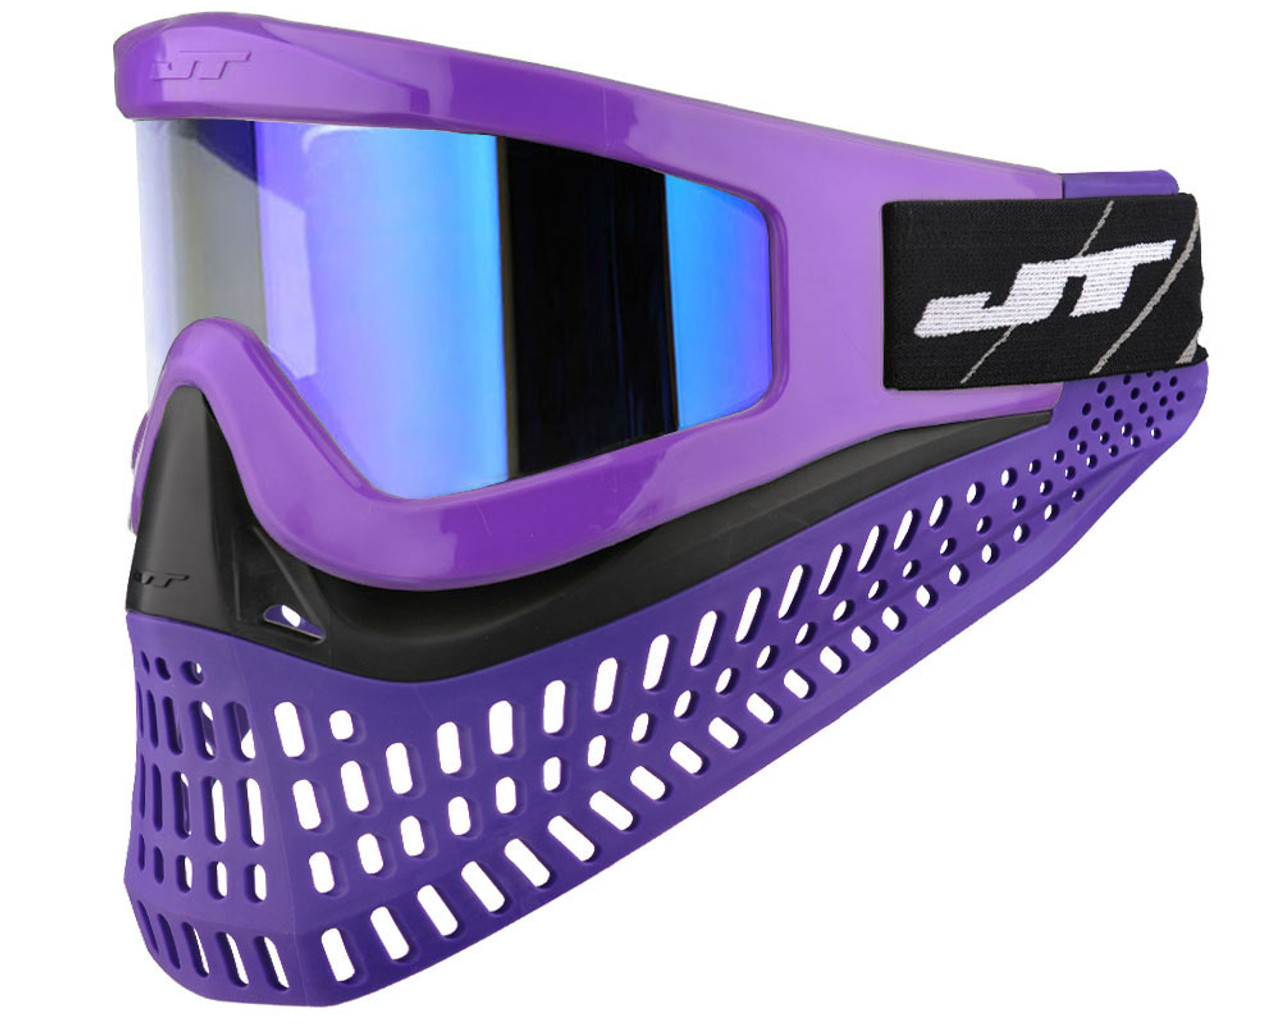 JT ProFlex X Paintball Mask w/ Quick Change System - Purple/Black/Purple